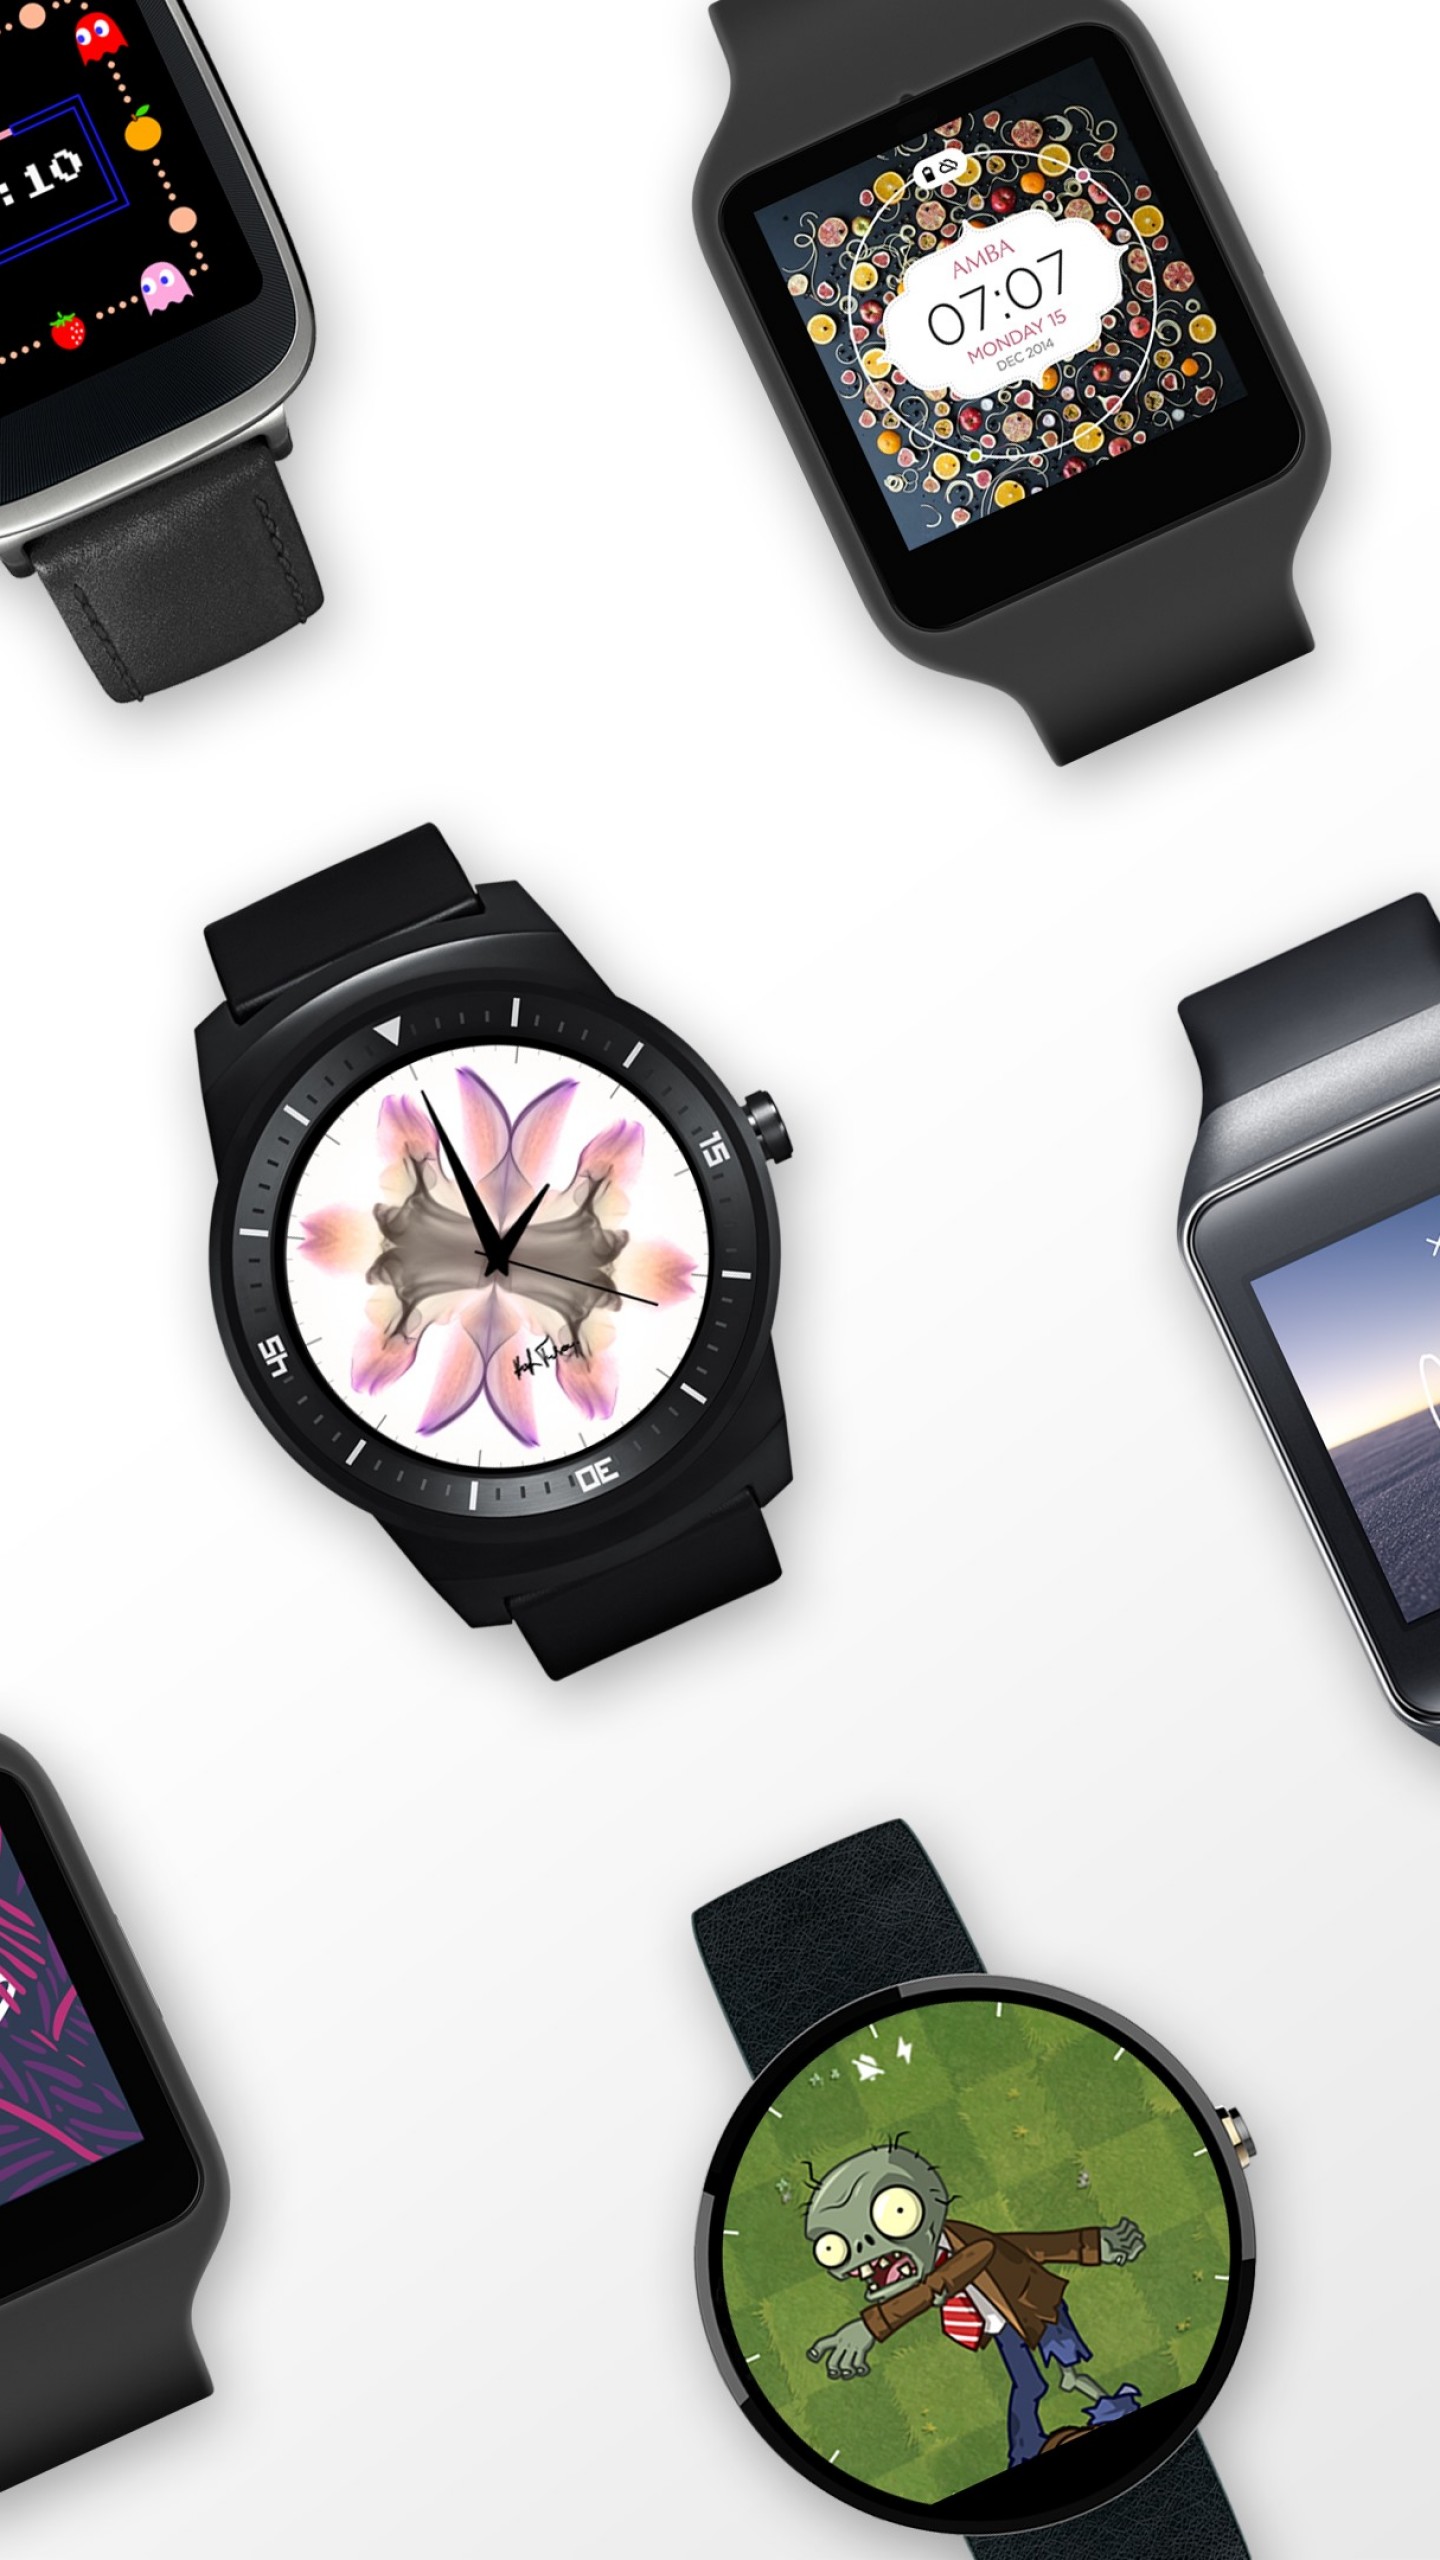 android wear fondo de pantalla,reloj analógico,reloj,reloj accesorio,artilugio,tecnología